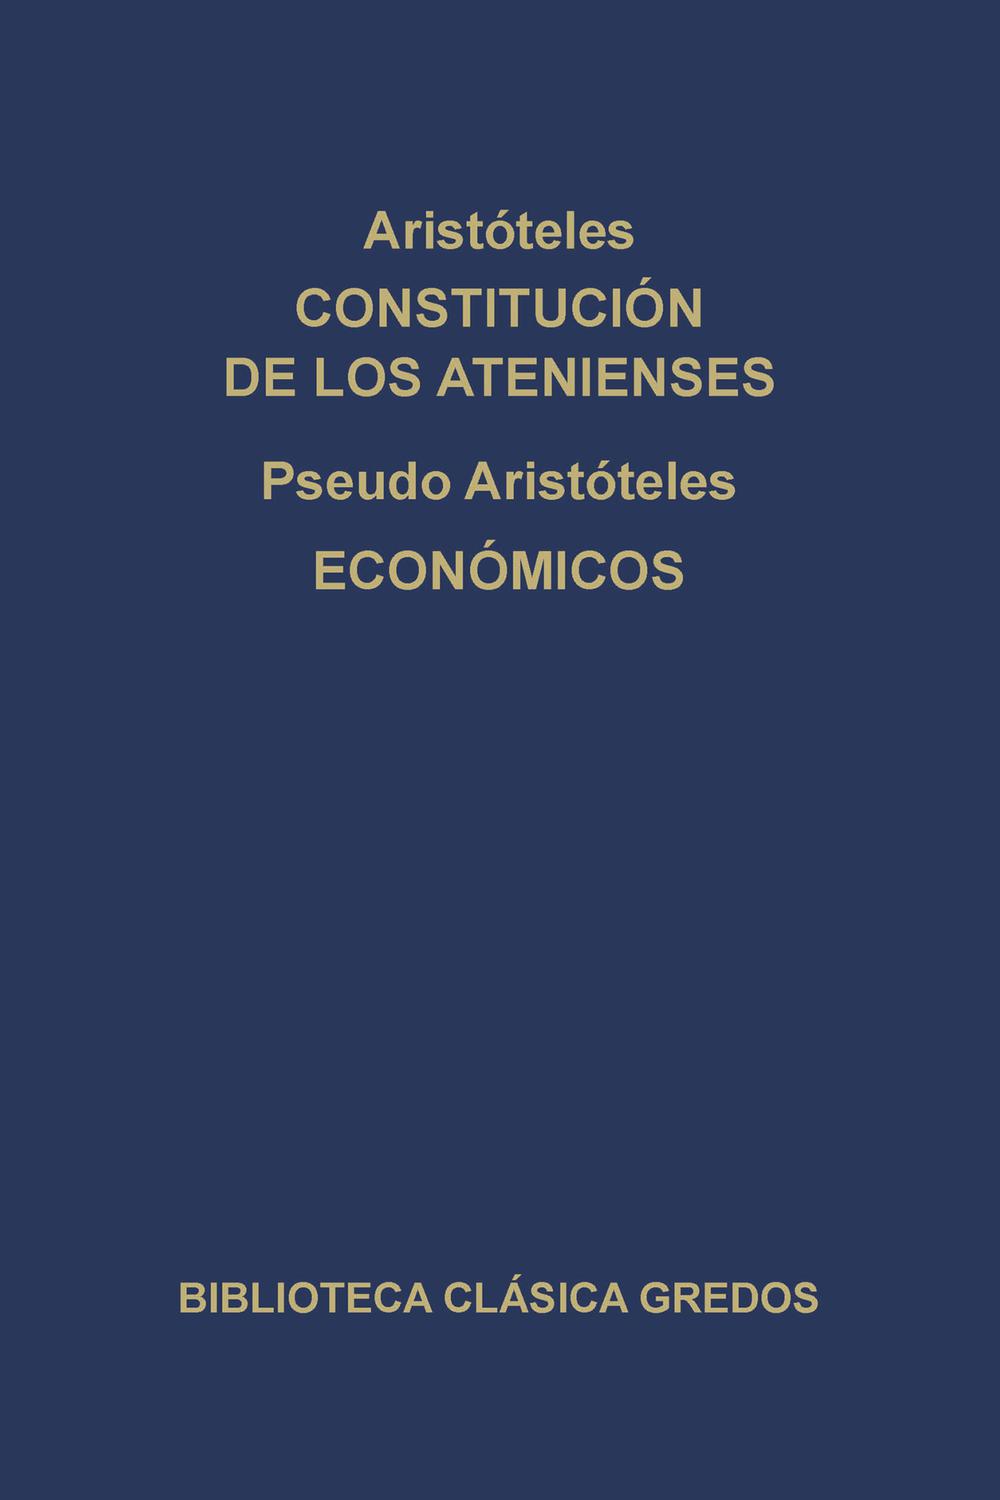 Constitución de los Atenienses. Económicos. - Aristóteles, Pseudo-Aristóteles, Manuela García Valdés, Concepción Serrano Aybar